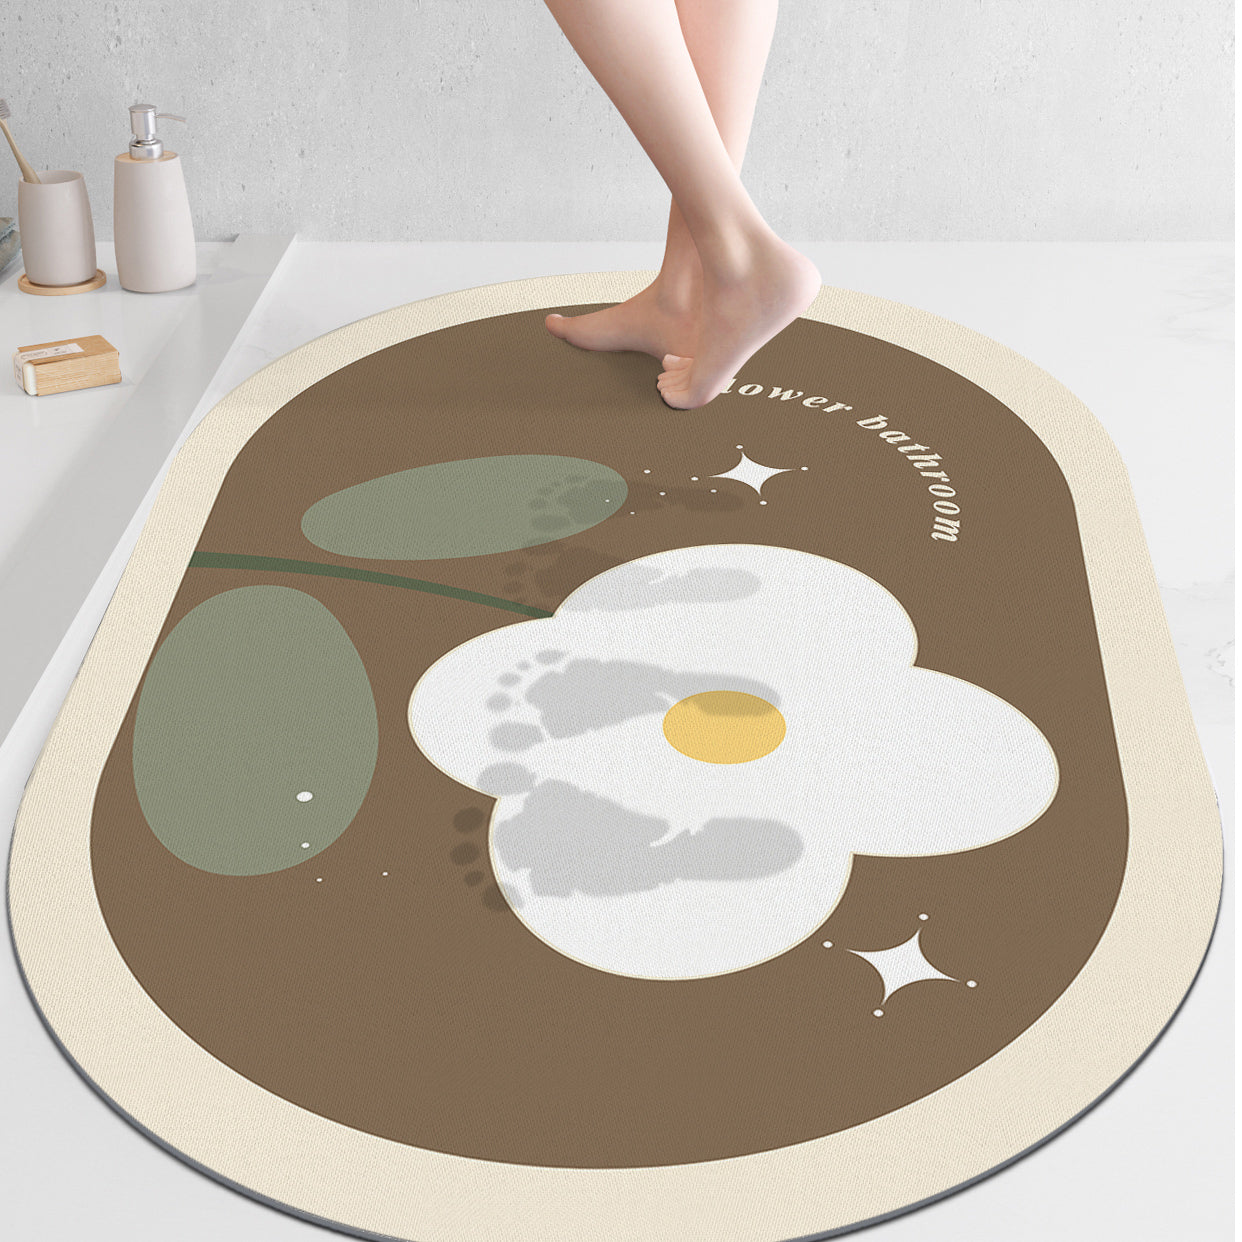 8design dream flower bath mat